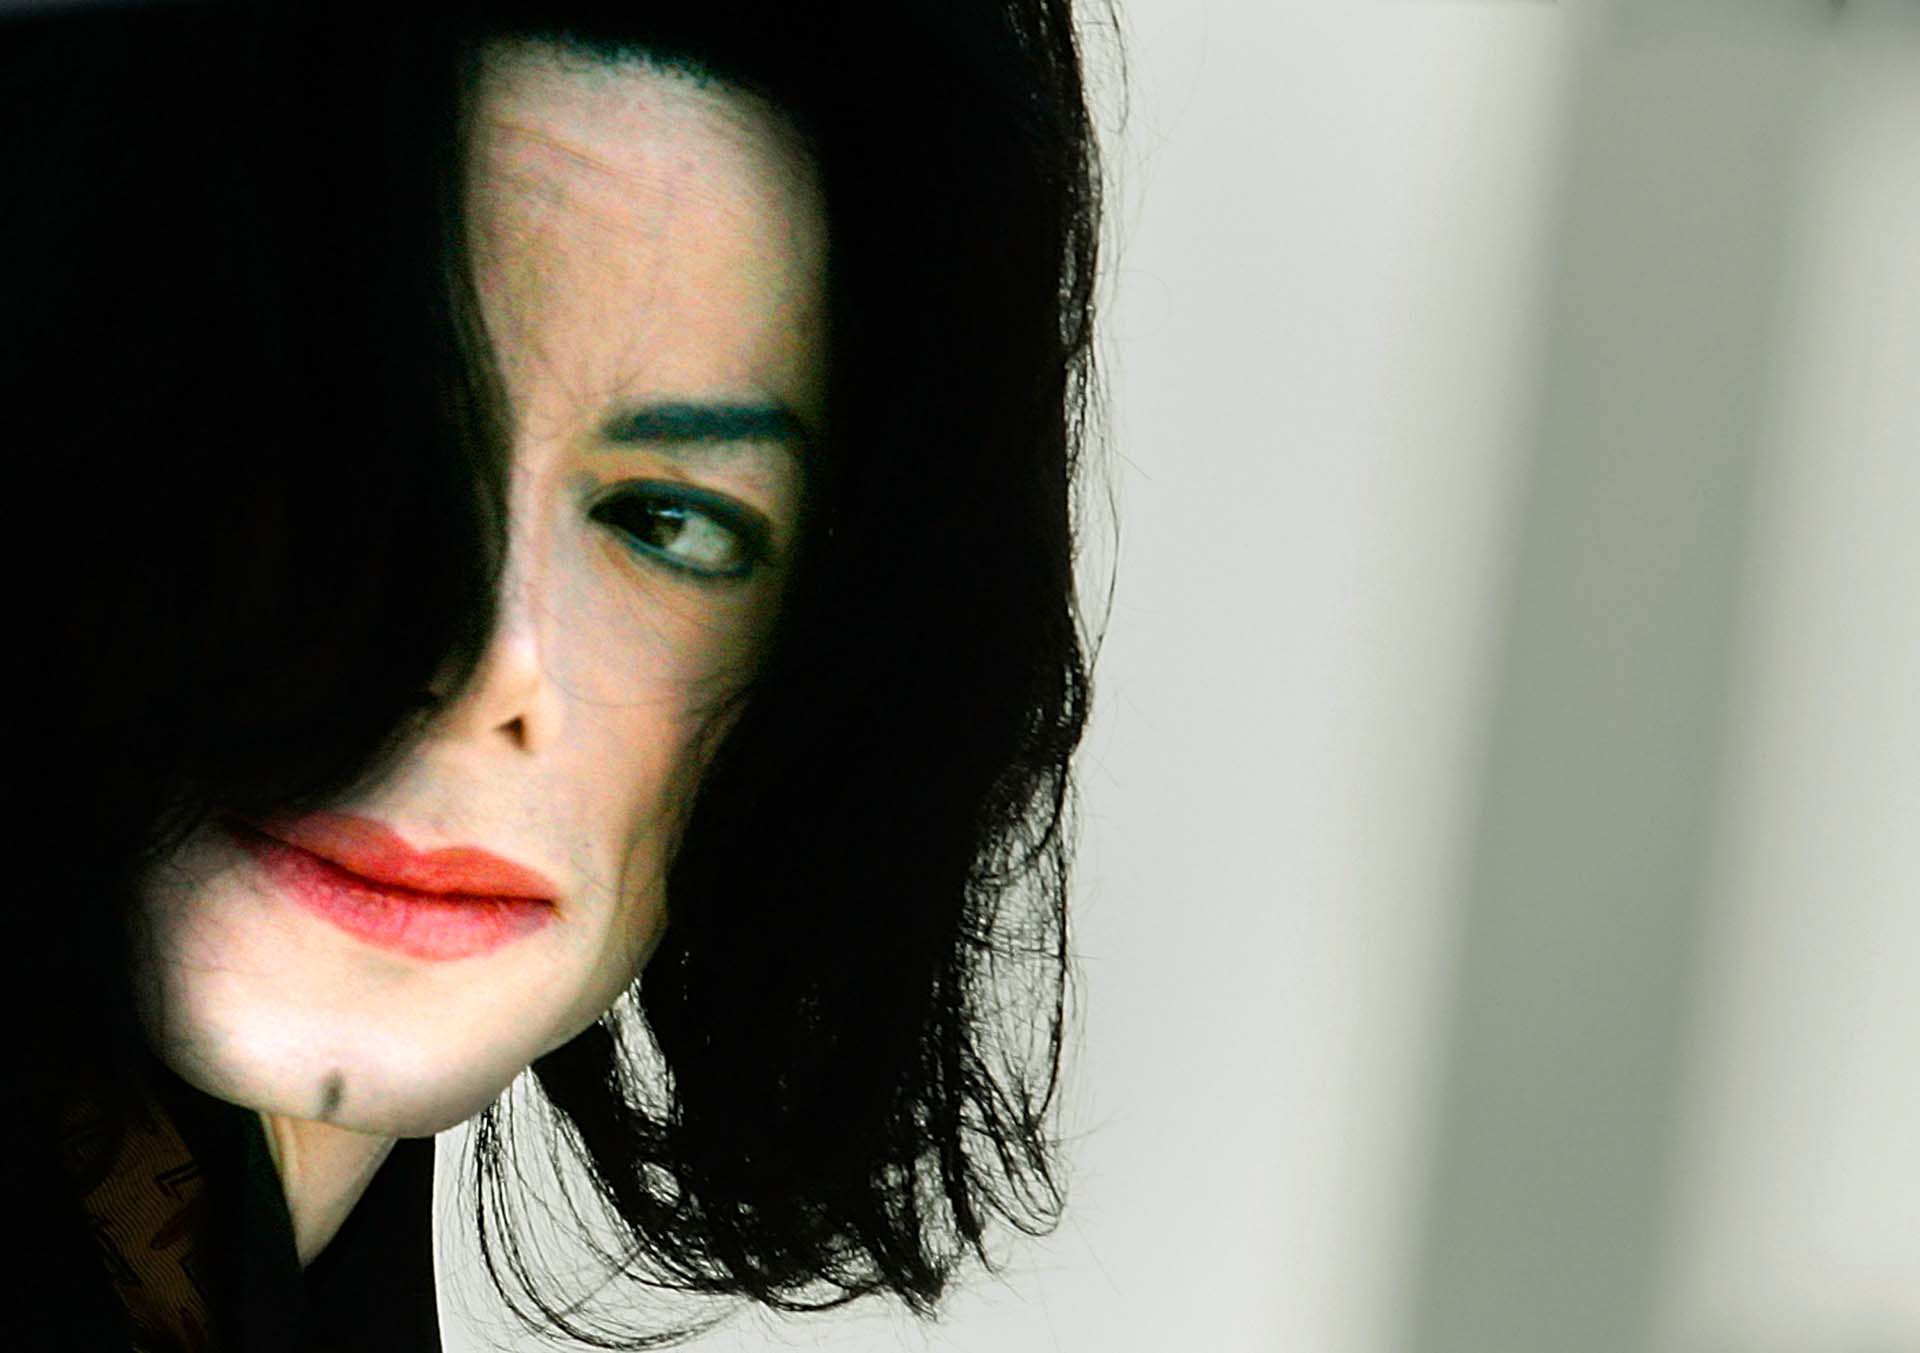 Con el paso de los años la piel de Michael Jackson fue empalideciendo. Se habló de tratamientos para ser blanco y también de una enfermedad dermatológico. Sus constantes transformaciones físicas alimentaron los rumores (Photo by Carlo Allegri/Getty Images)